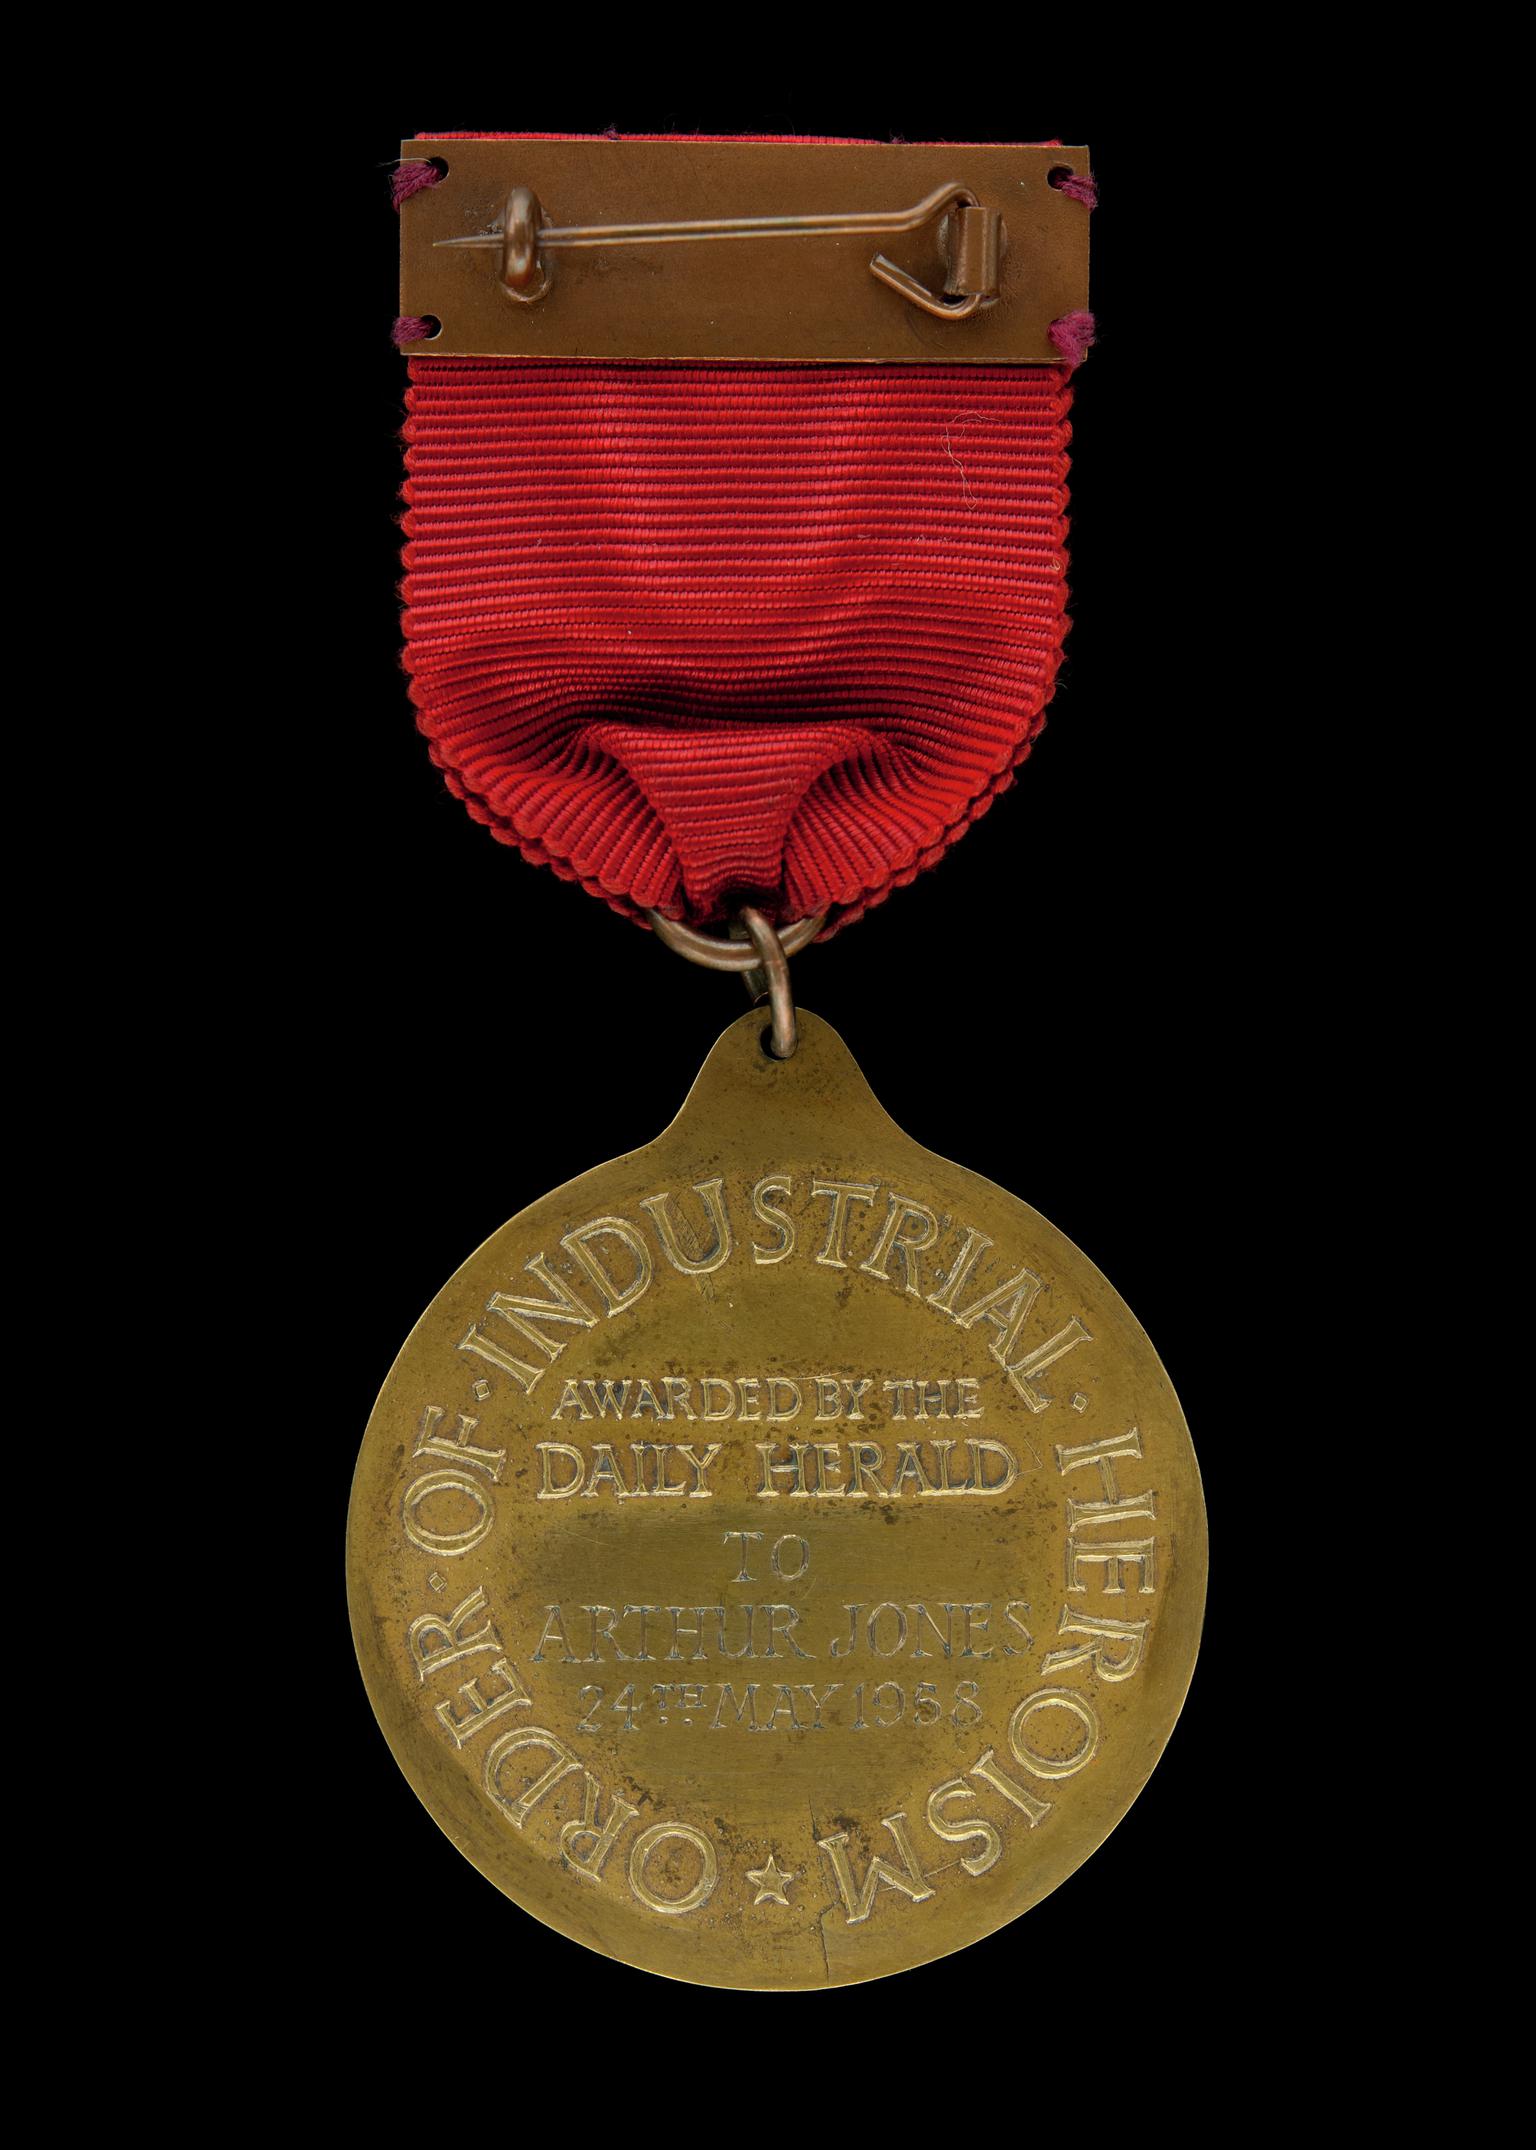 Daily Herald Order of Industrial Heroism medal